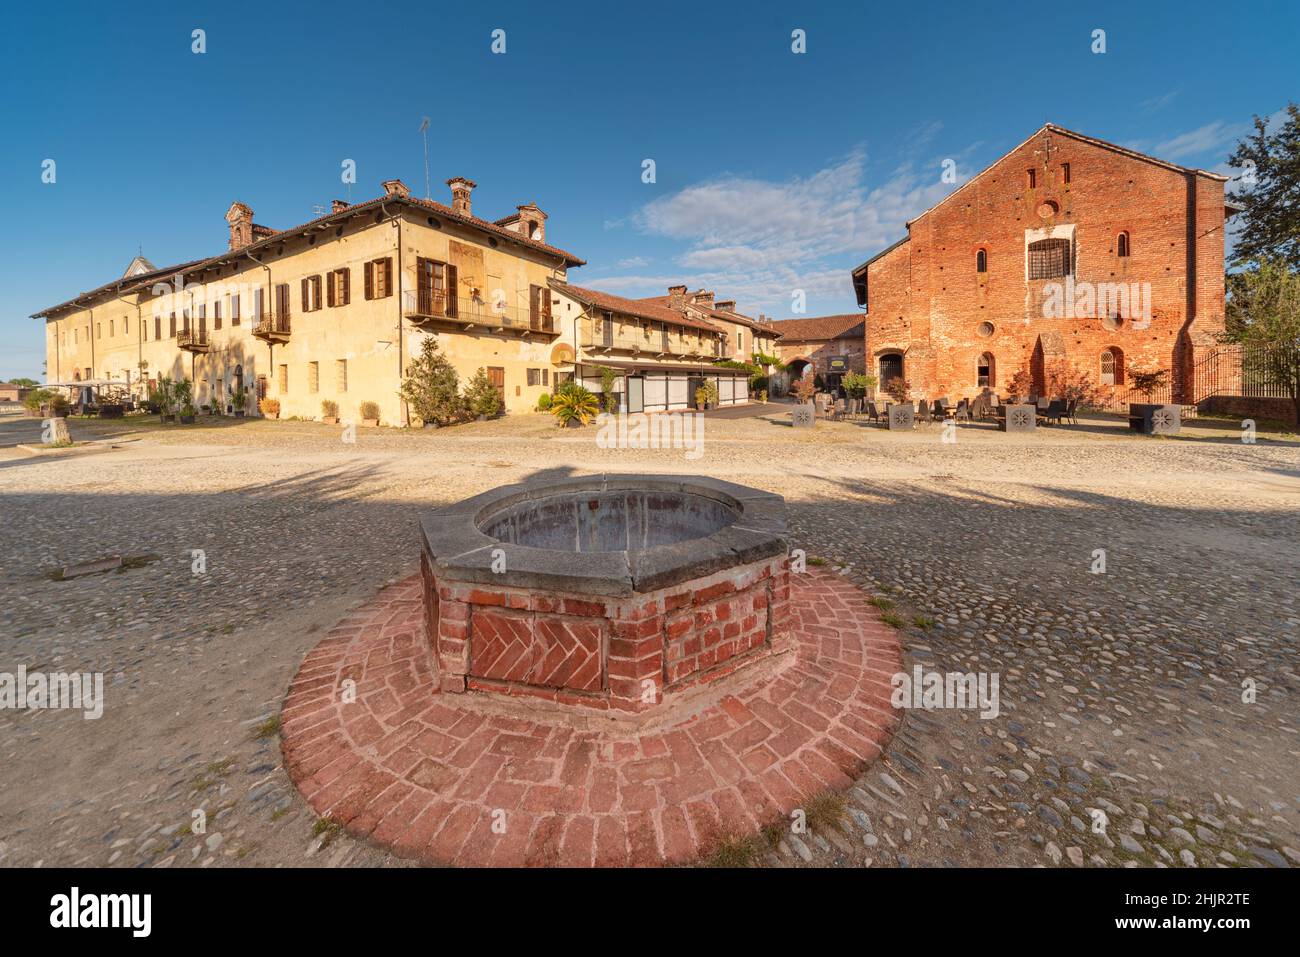 Staffarda di Revello, Saluzzo, Italie - 8 octobre 2021: La maison d'hôtes de l'abbaye de Staffarda avec le réfectoire, le dortoir, l'abri à cheval et le puits dans le TH Banque D'Images